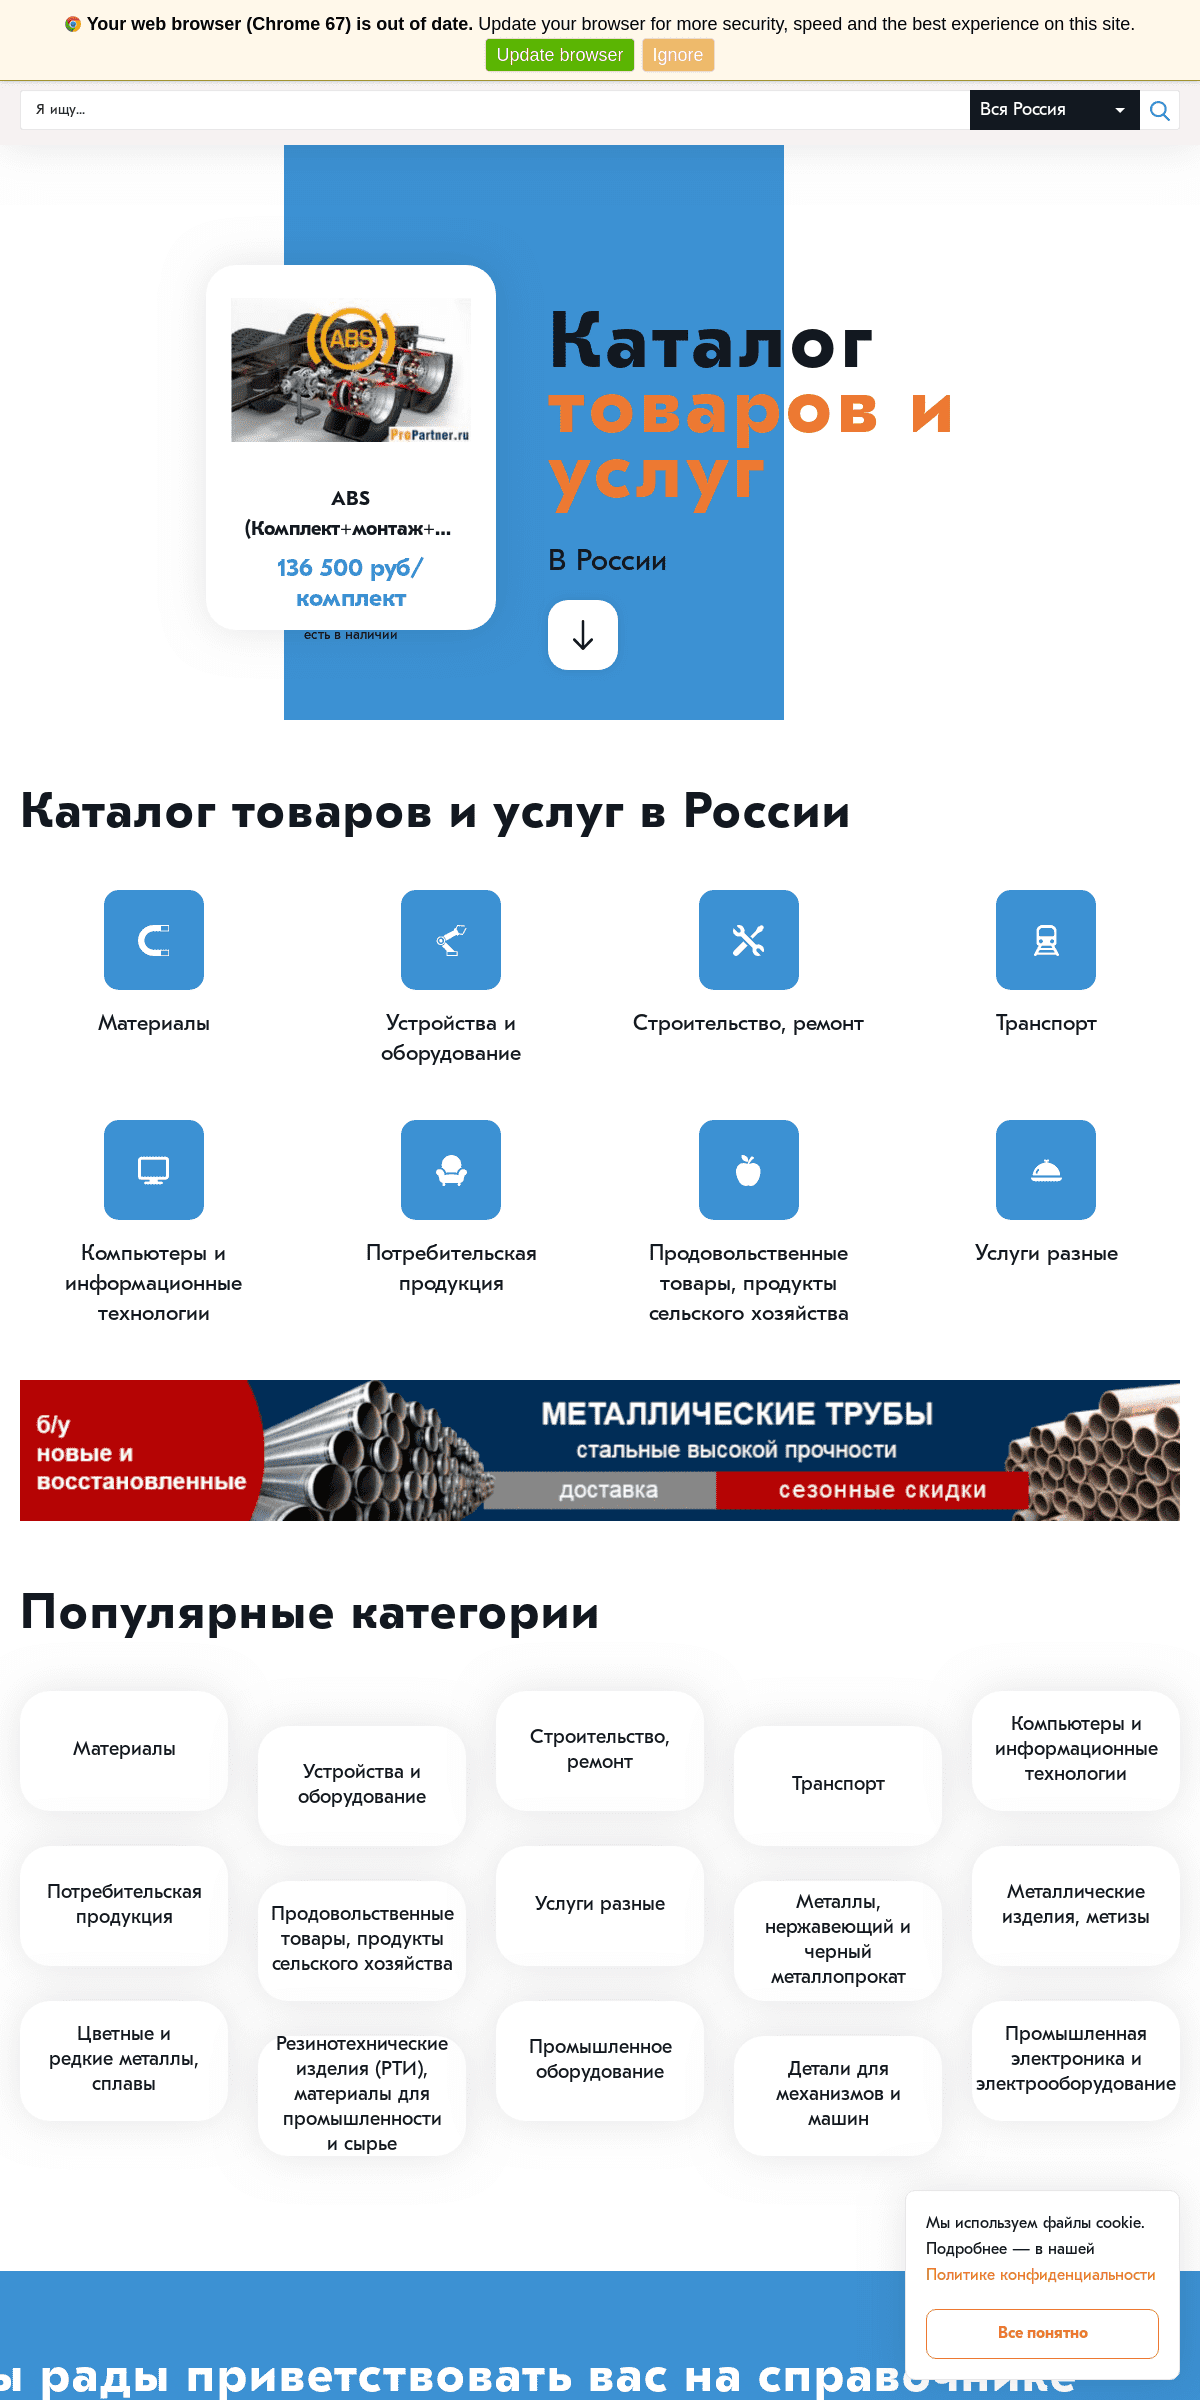 A complete backup of propartner.ru